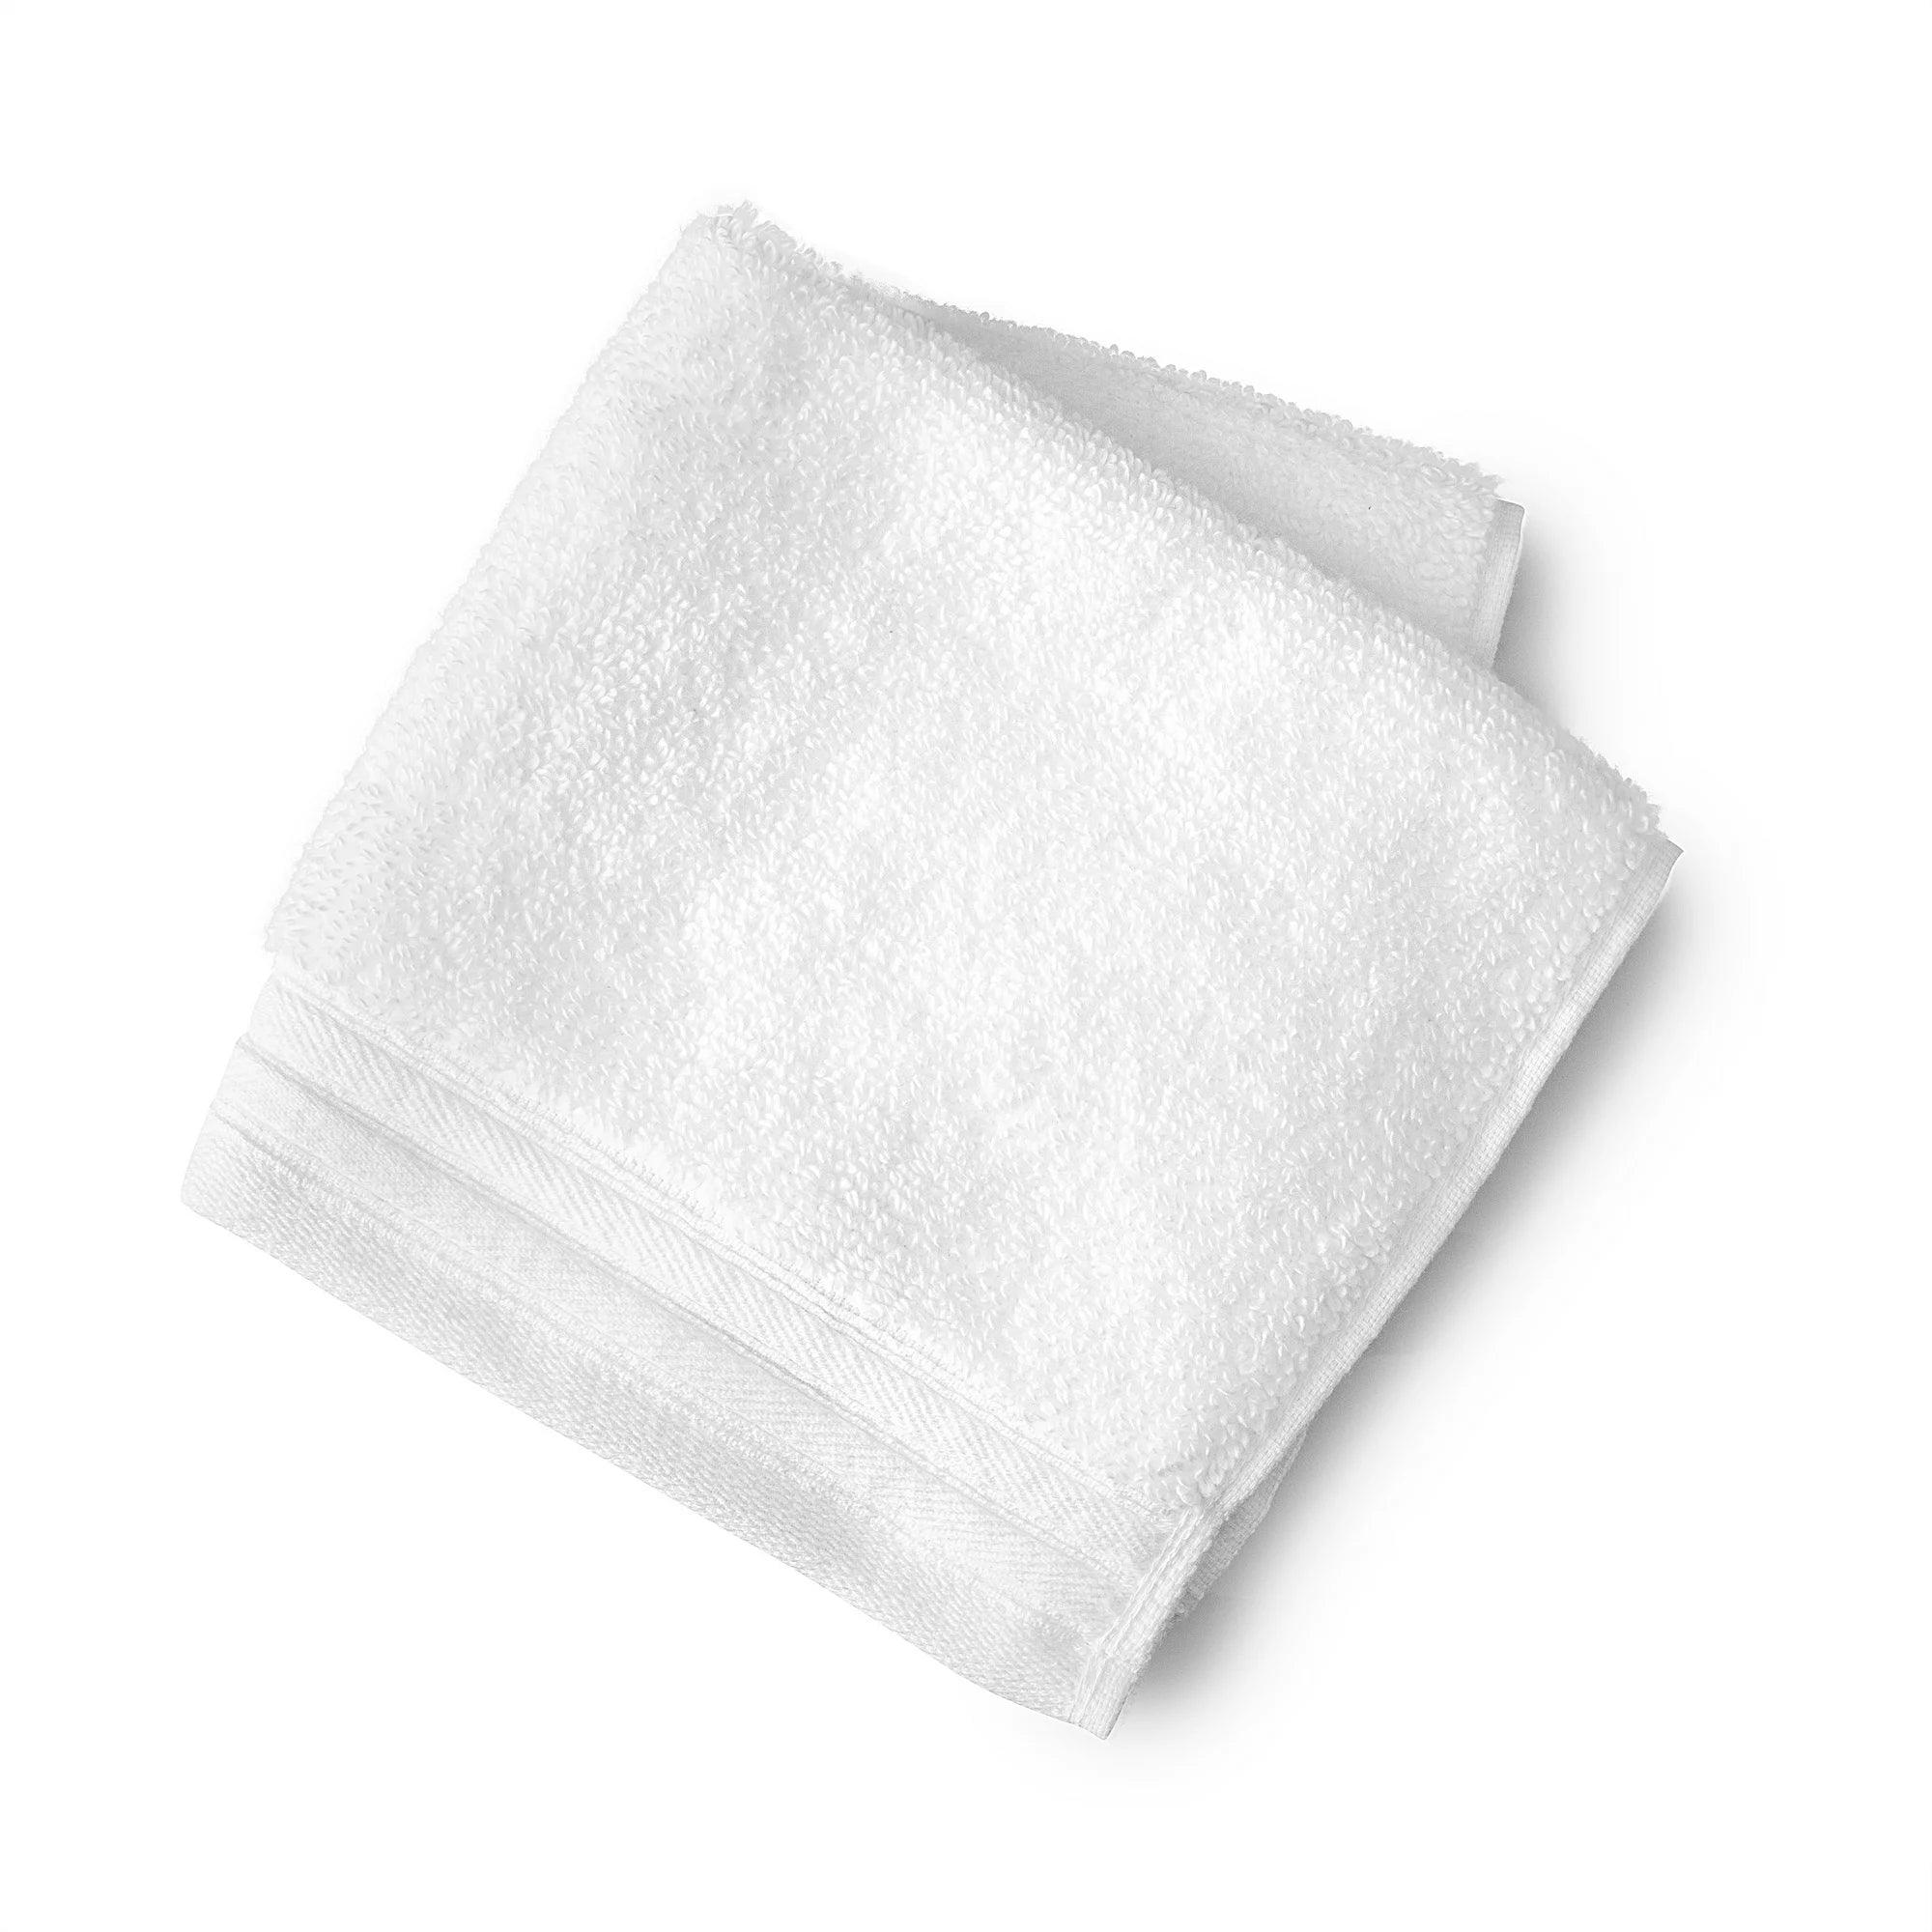 Egyptian/Towel